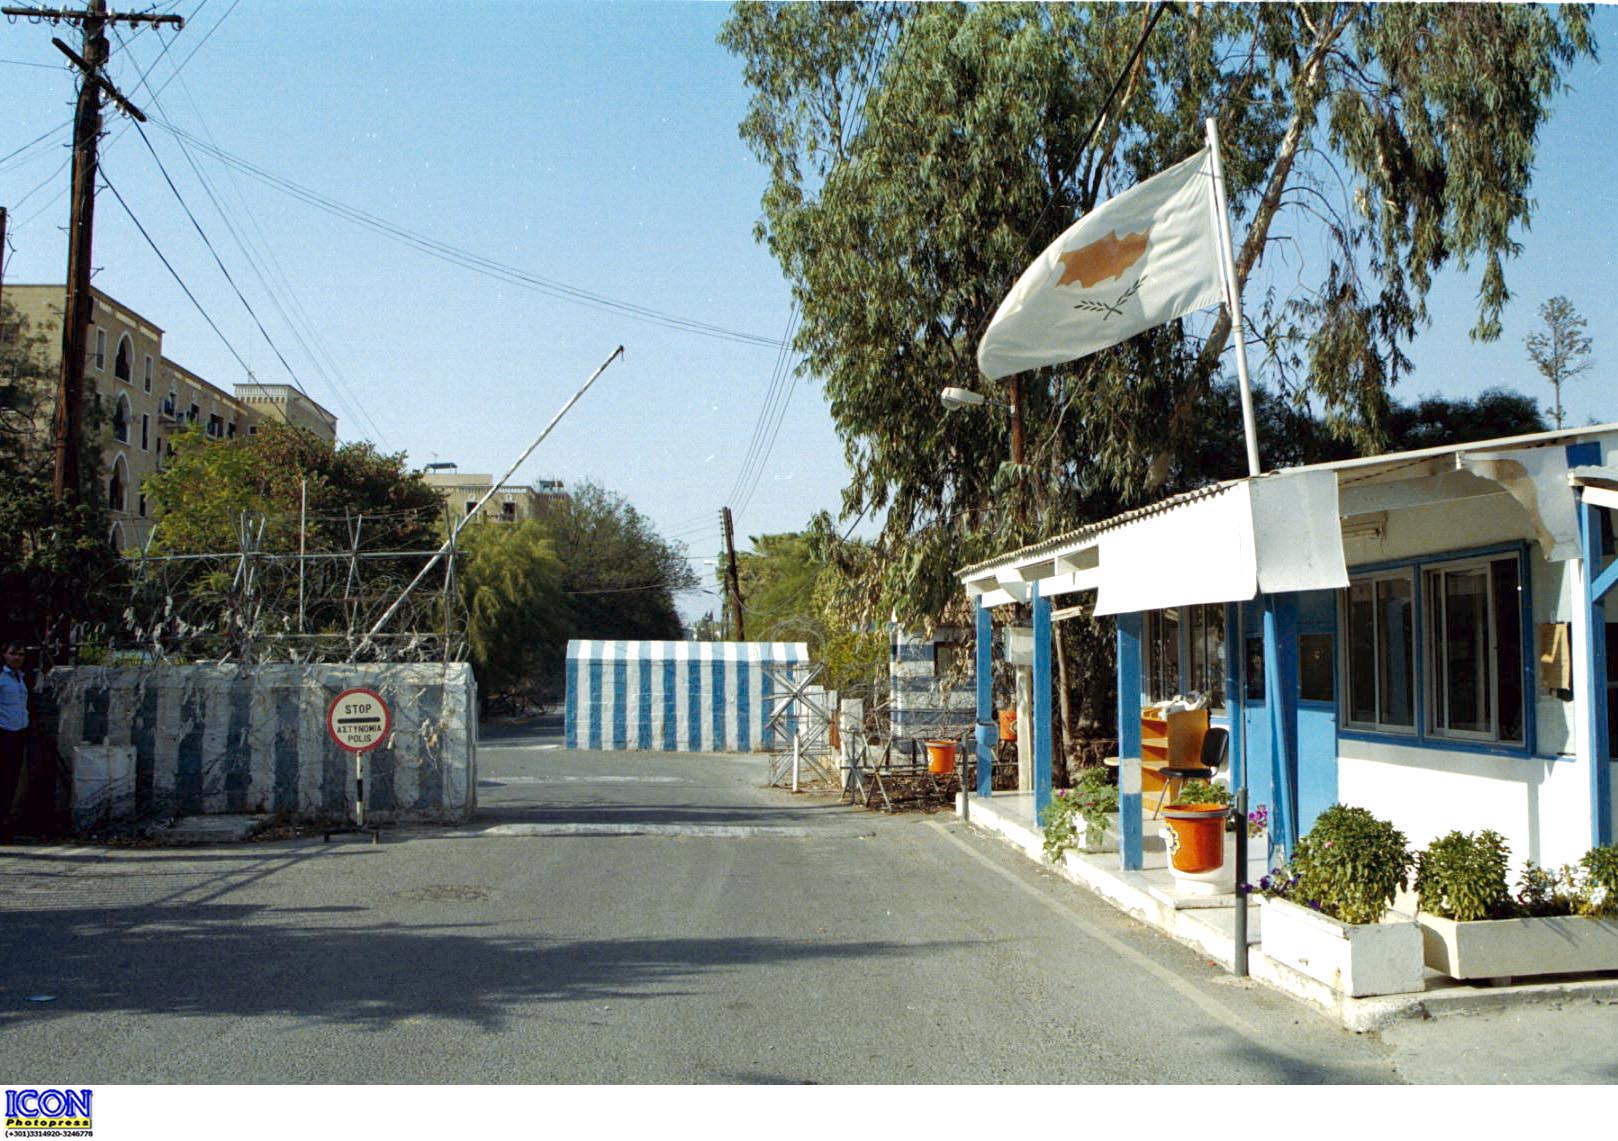 Κύπρος: Ένταση προκλήθηκε στη νεκρή ζώνη από τα στρατεύματα κατοχής